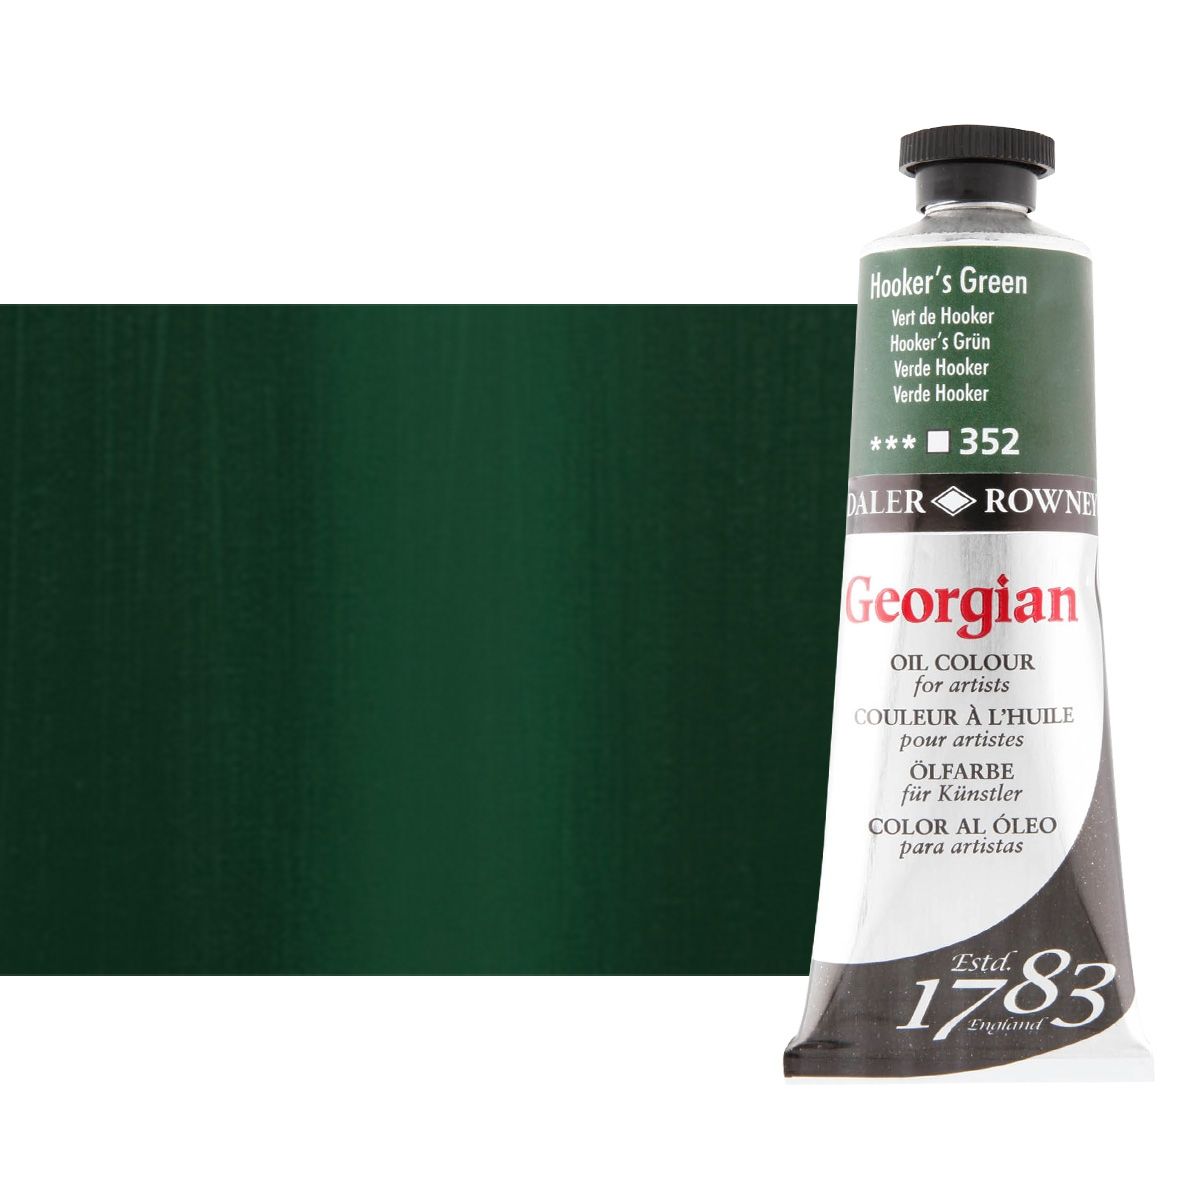 Daler-Rowney Georgian Oil Color 38ml Tube - Hooker's Green